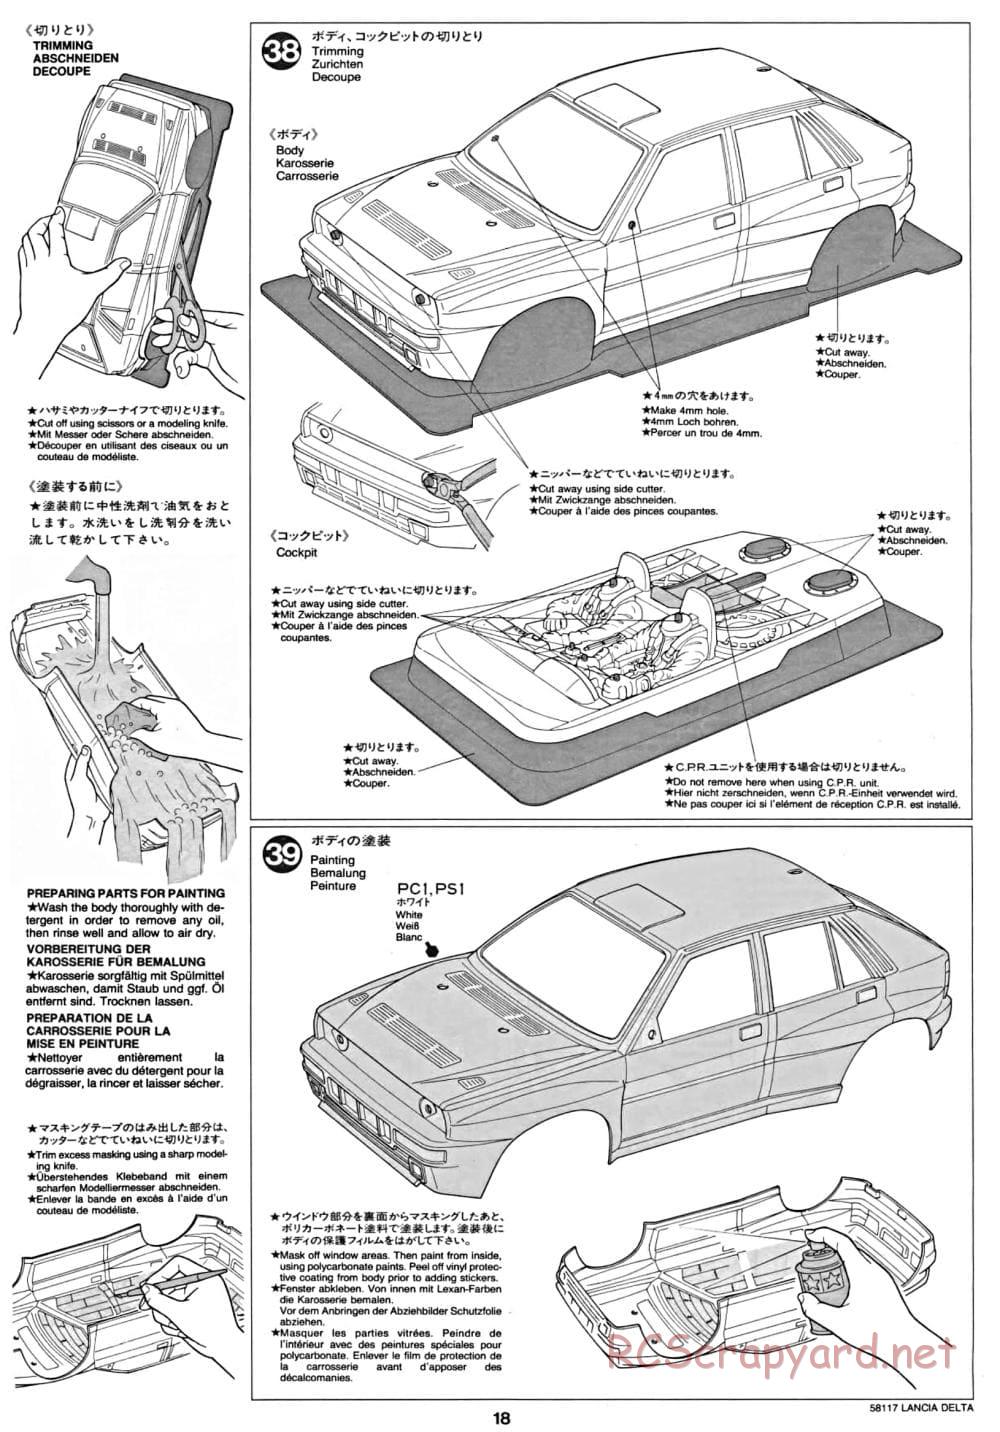 Tamiya - Lancia Delta HF Integrale - TA-01 Chassis - Manual - Page 18